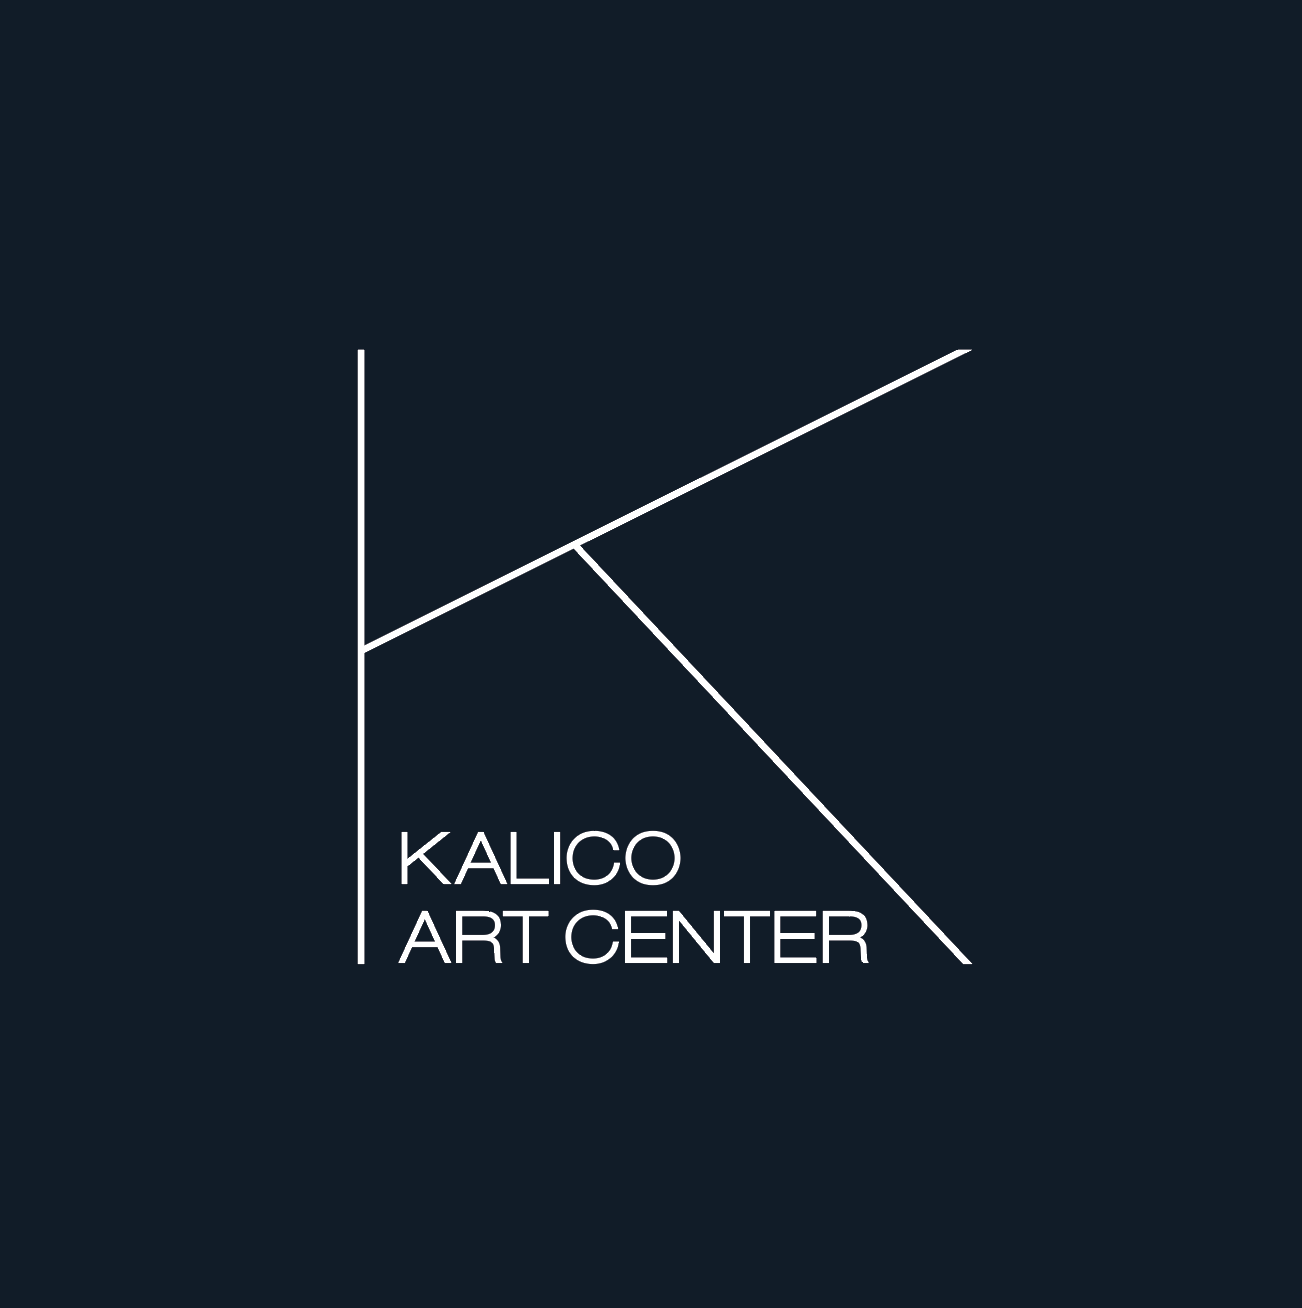 Kalico Art Center in Kalispell, Montana